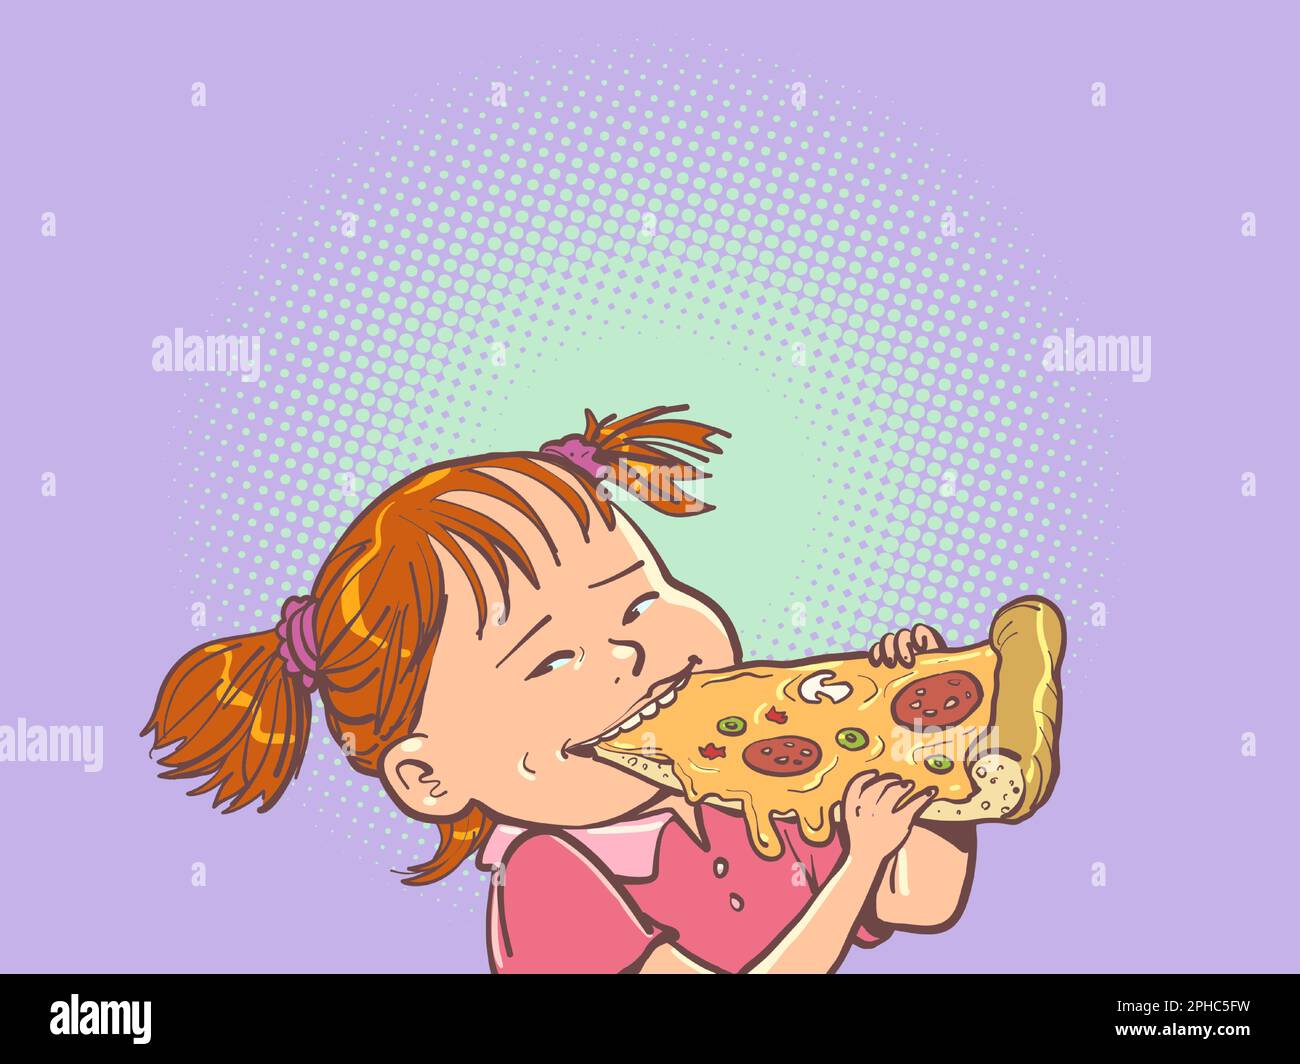 Une fille aux cheveux rouges mange une délicieuse pizza. Service de livraison rapide de nourriture. Mauvaises habitudes, problèmes de santé et éducation. Illustration de Vecteur